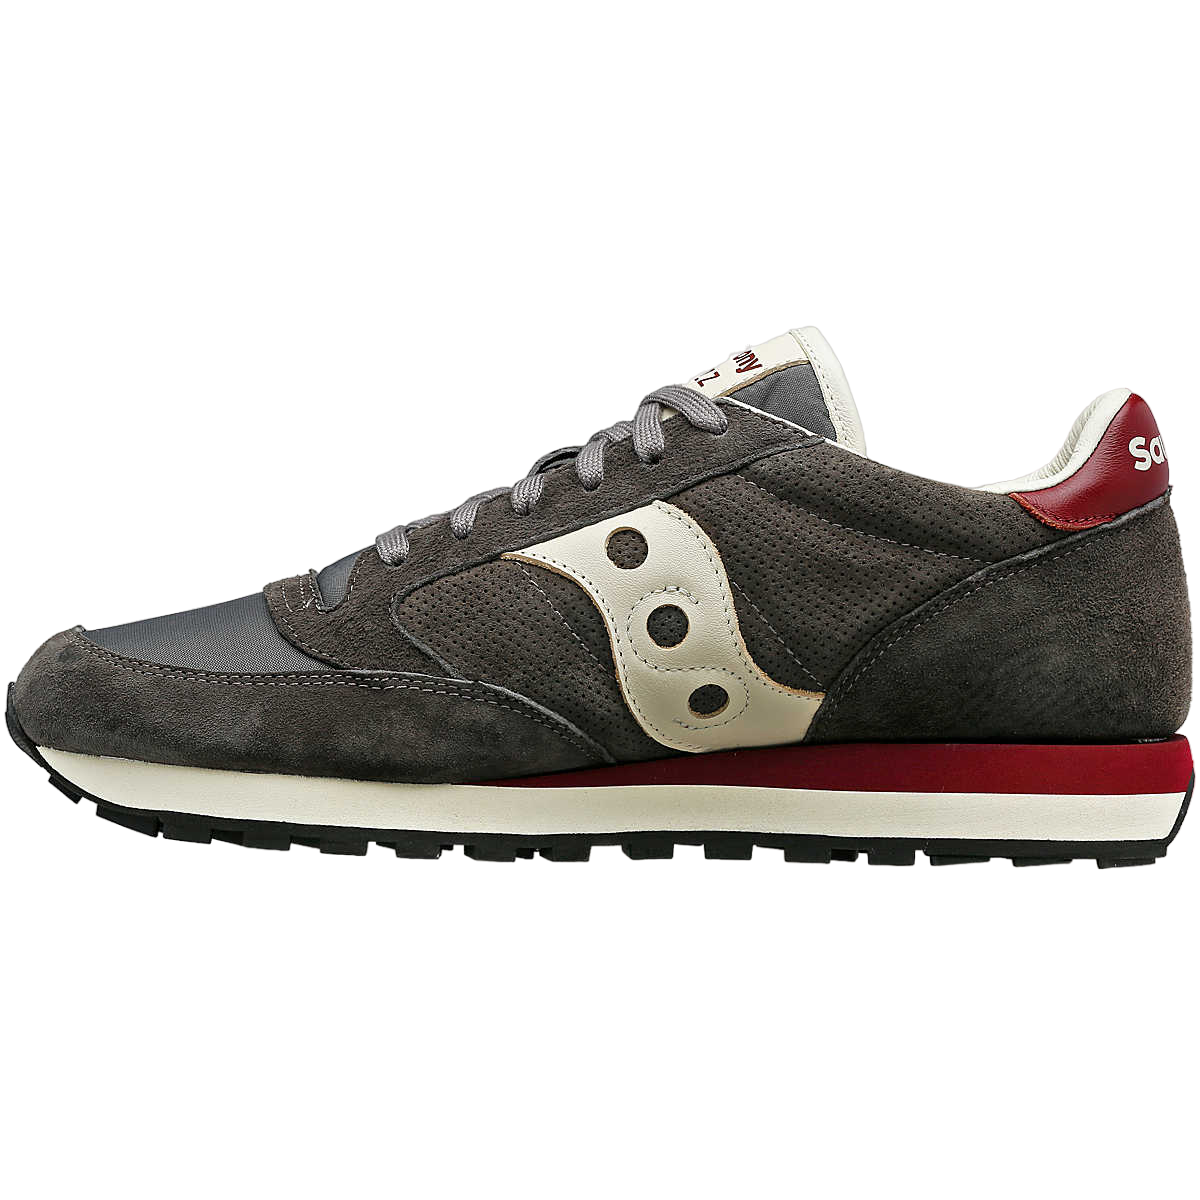 Saucony Originals scarpa sneakers da uomo Jazz Original Premium S70787-2 grigio